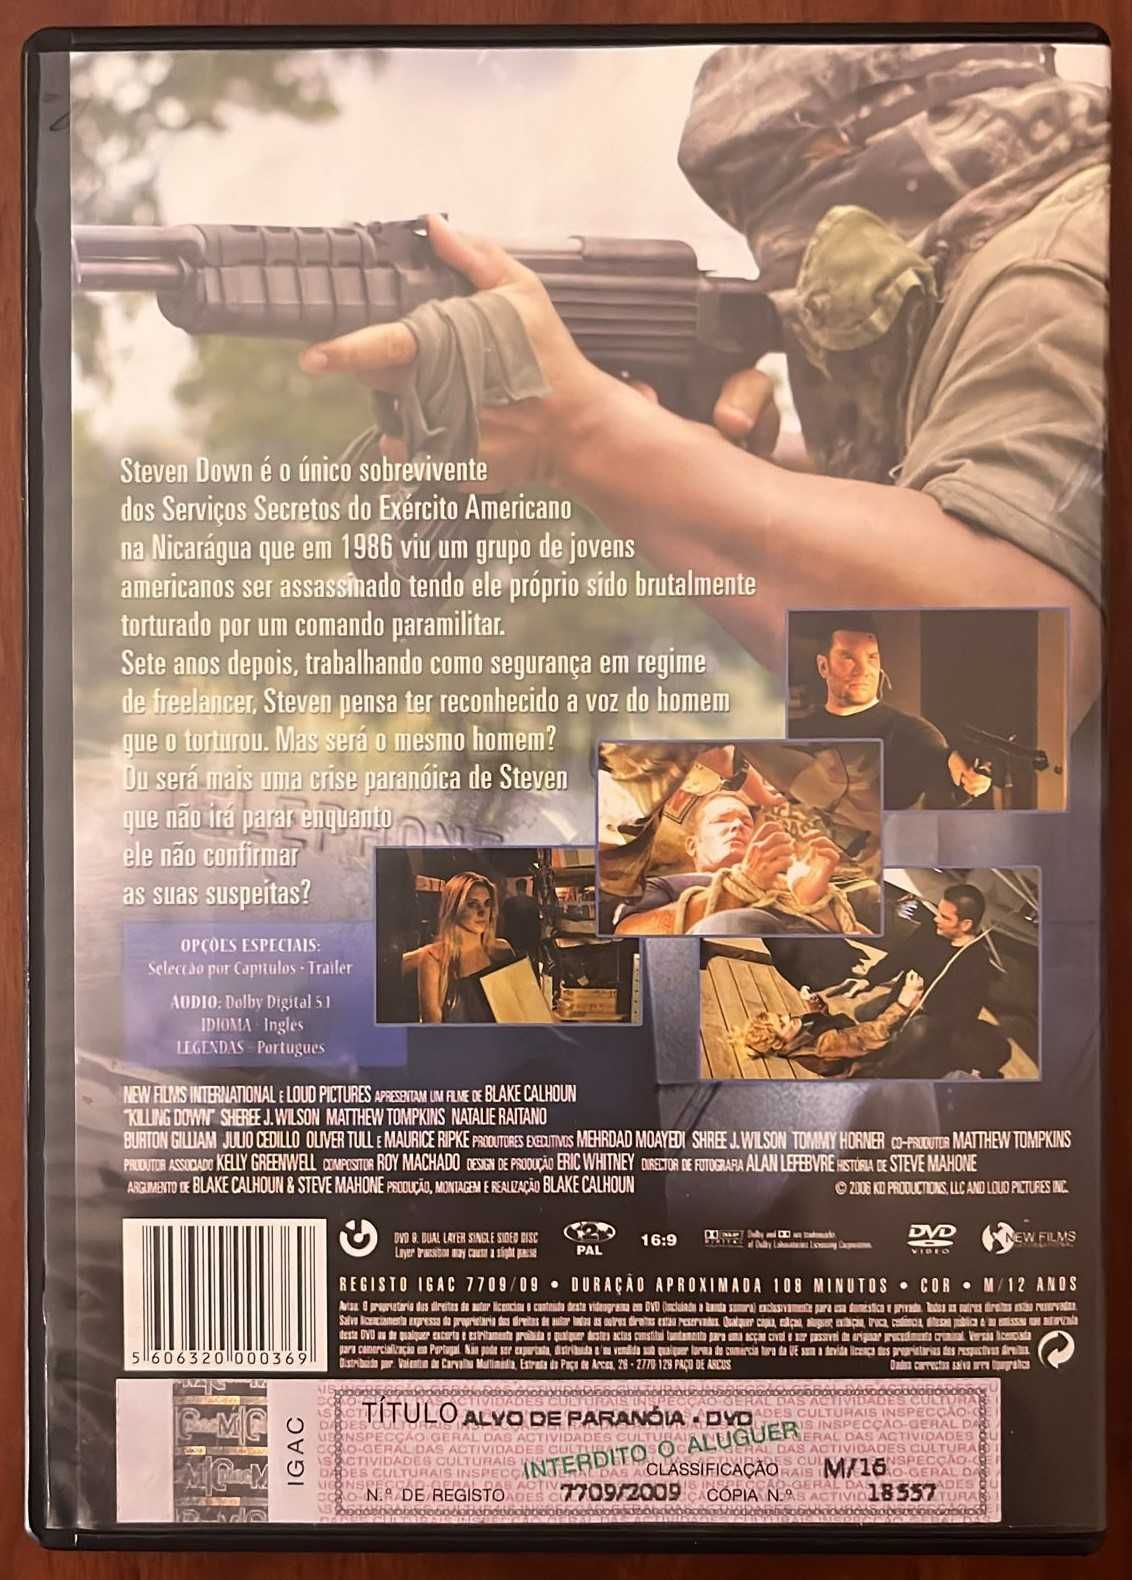 DVD "Alvo de Paranóia"